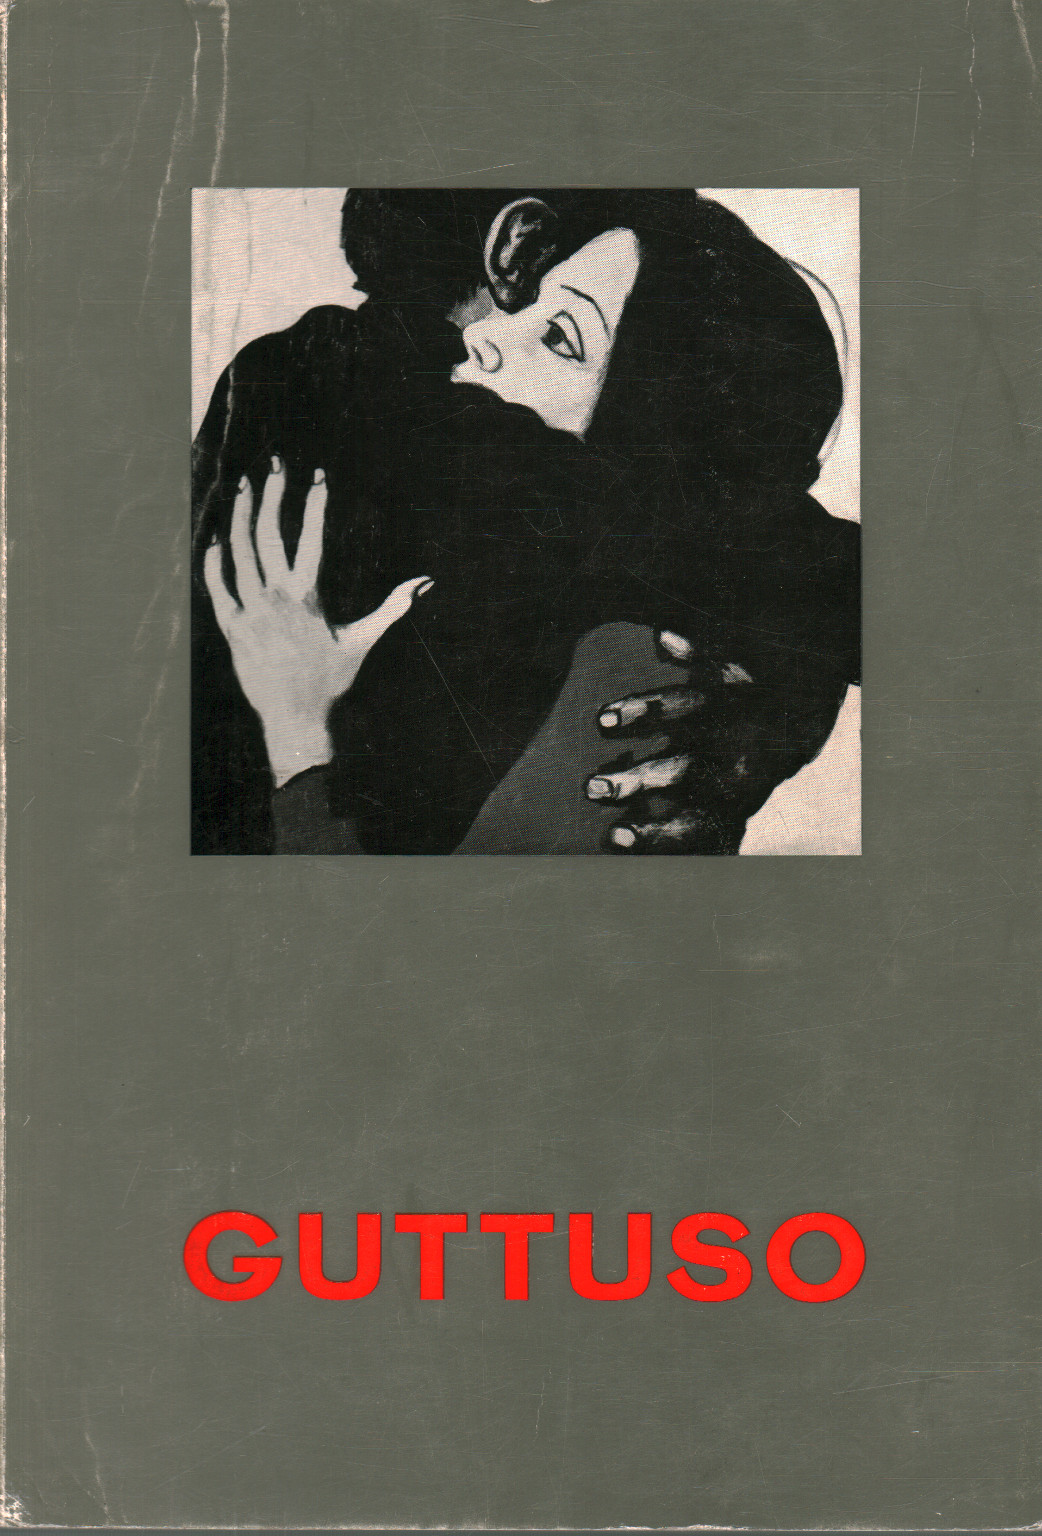 Katalog der anthologischen Ausstellung der Werke von Re, Leonardo Sciascia Franco Russoli Franco Grasso